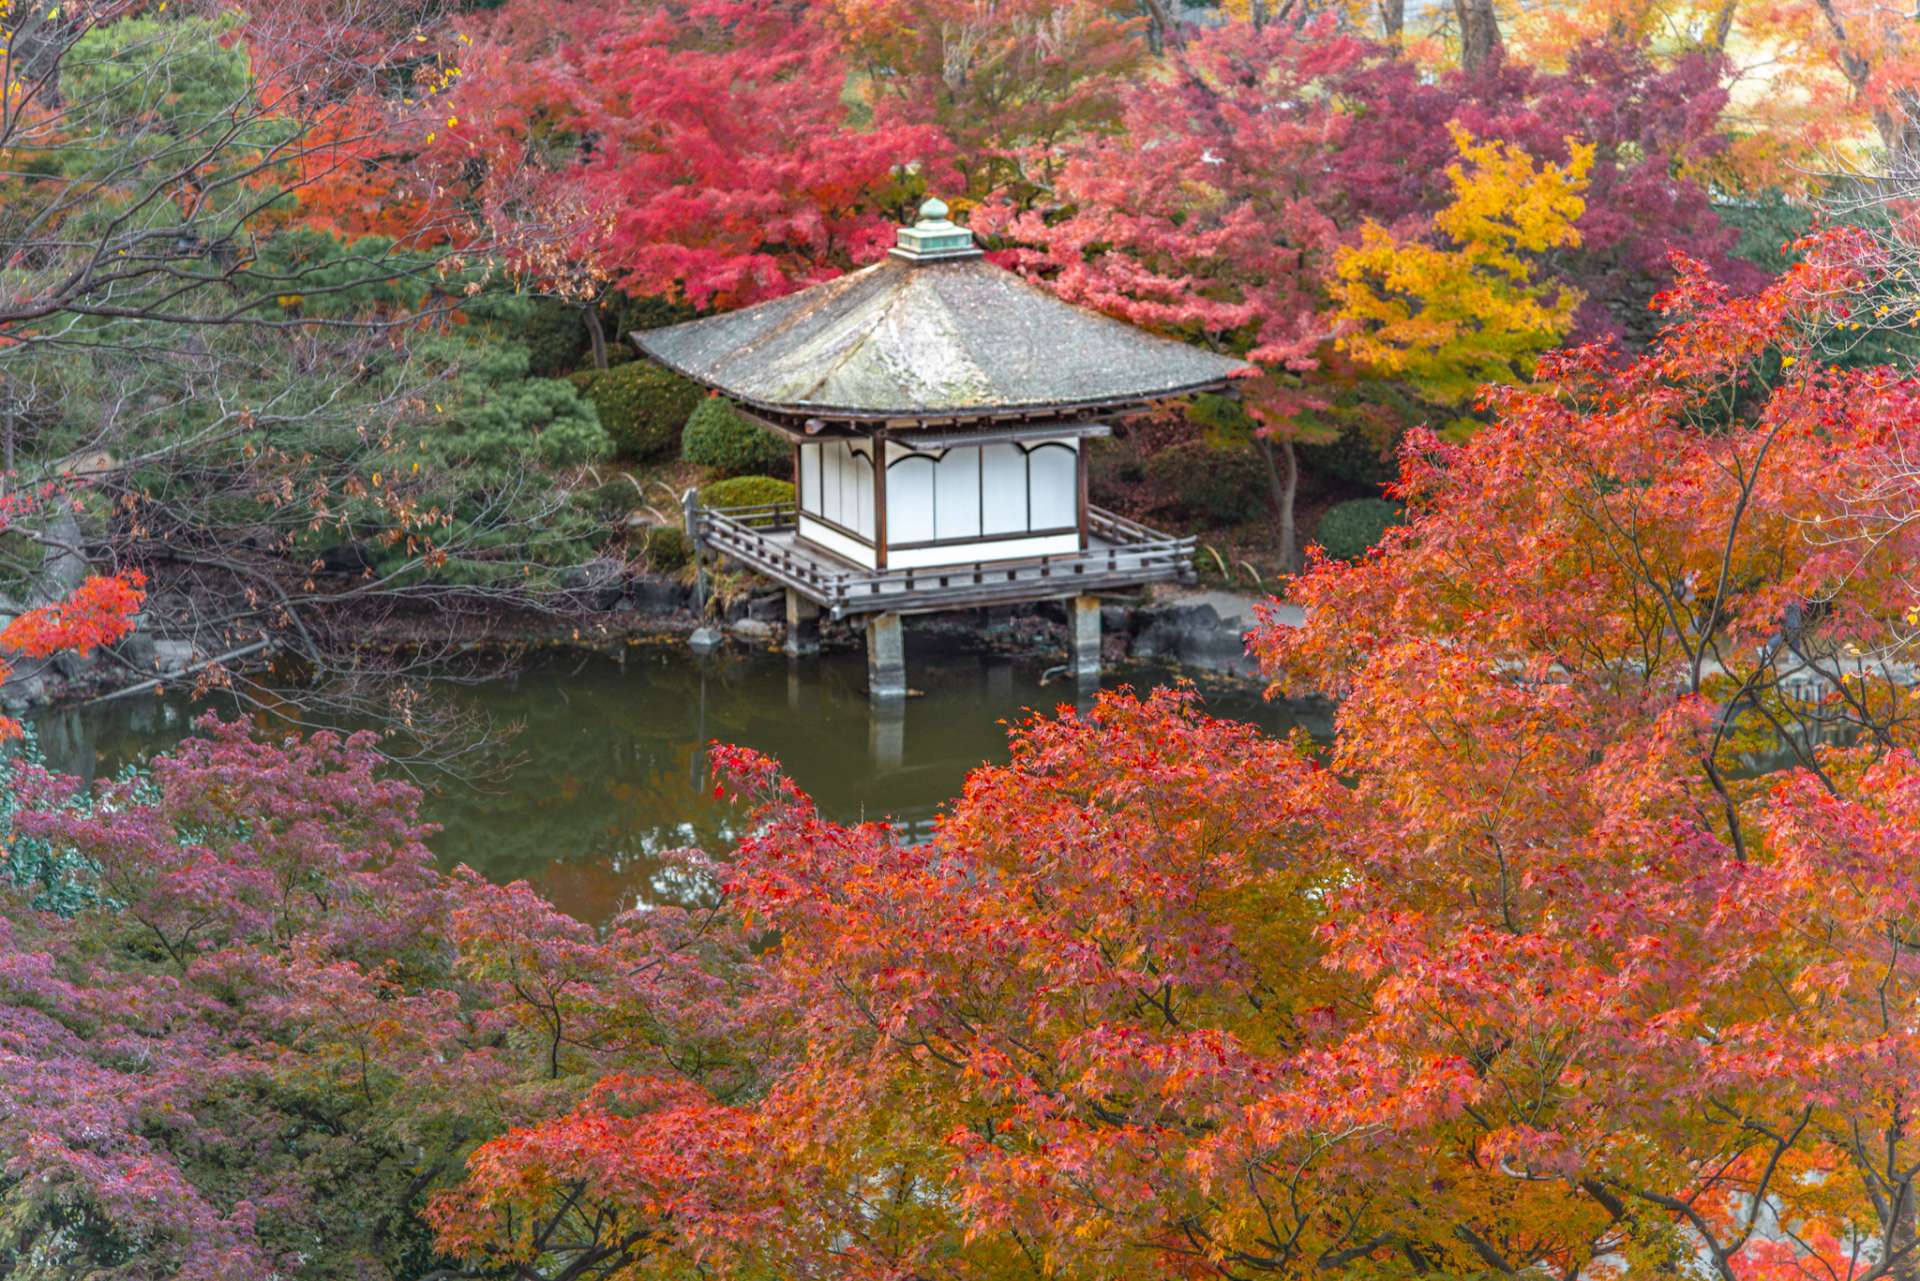 「紅葉渓庭園」とも称され愛される秋の庭園